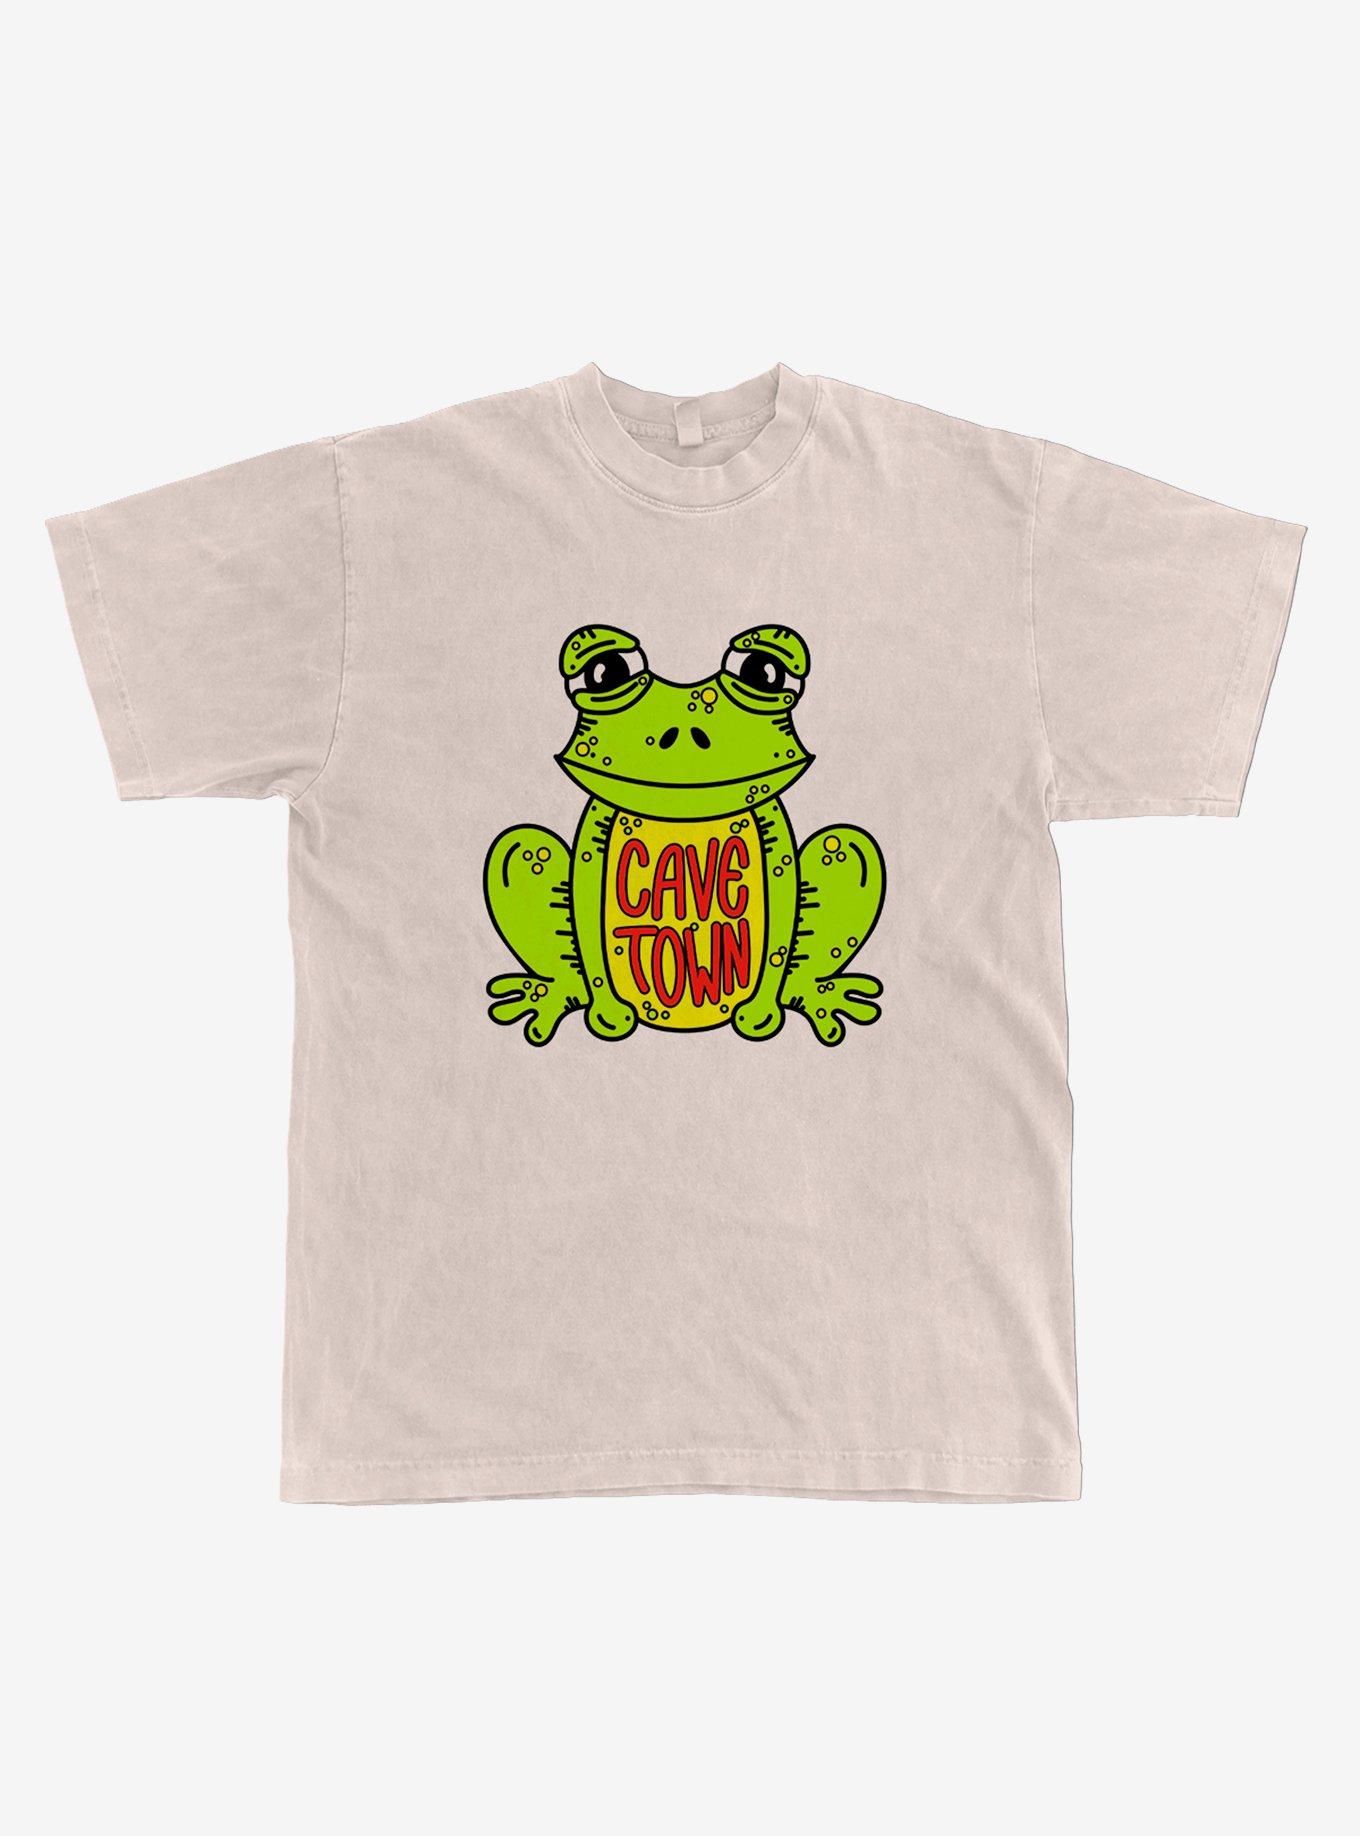 Cavetown Frog Boyfriend Fit Girls T-Shirt, CREAM, hi-res